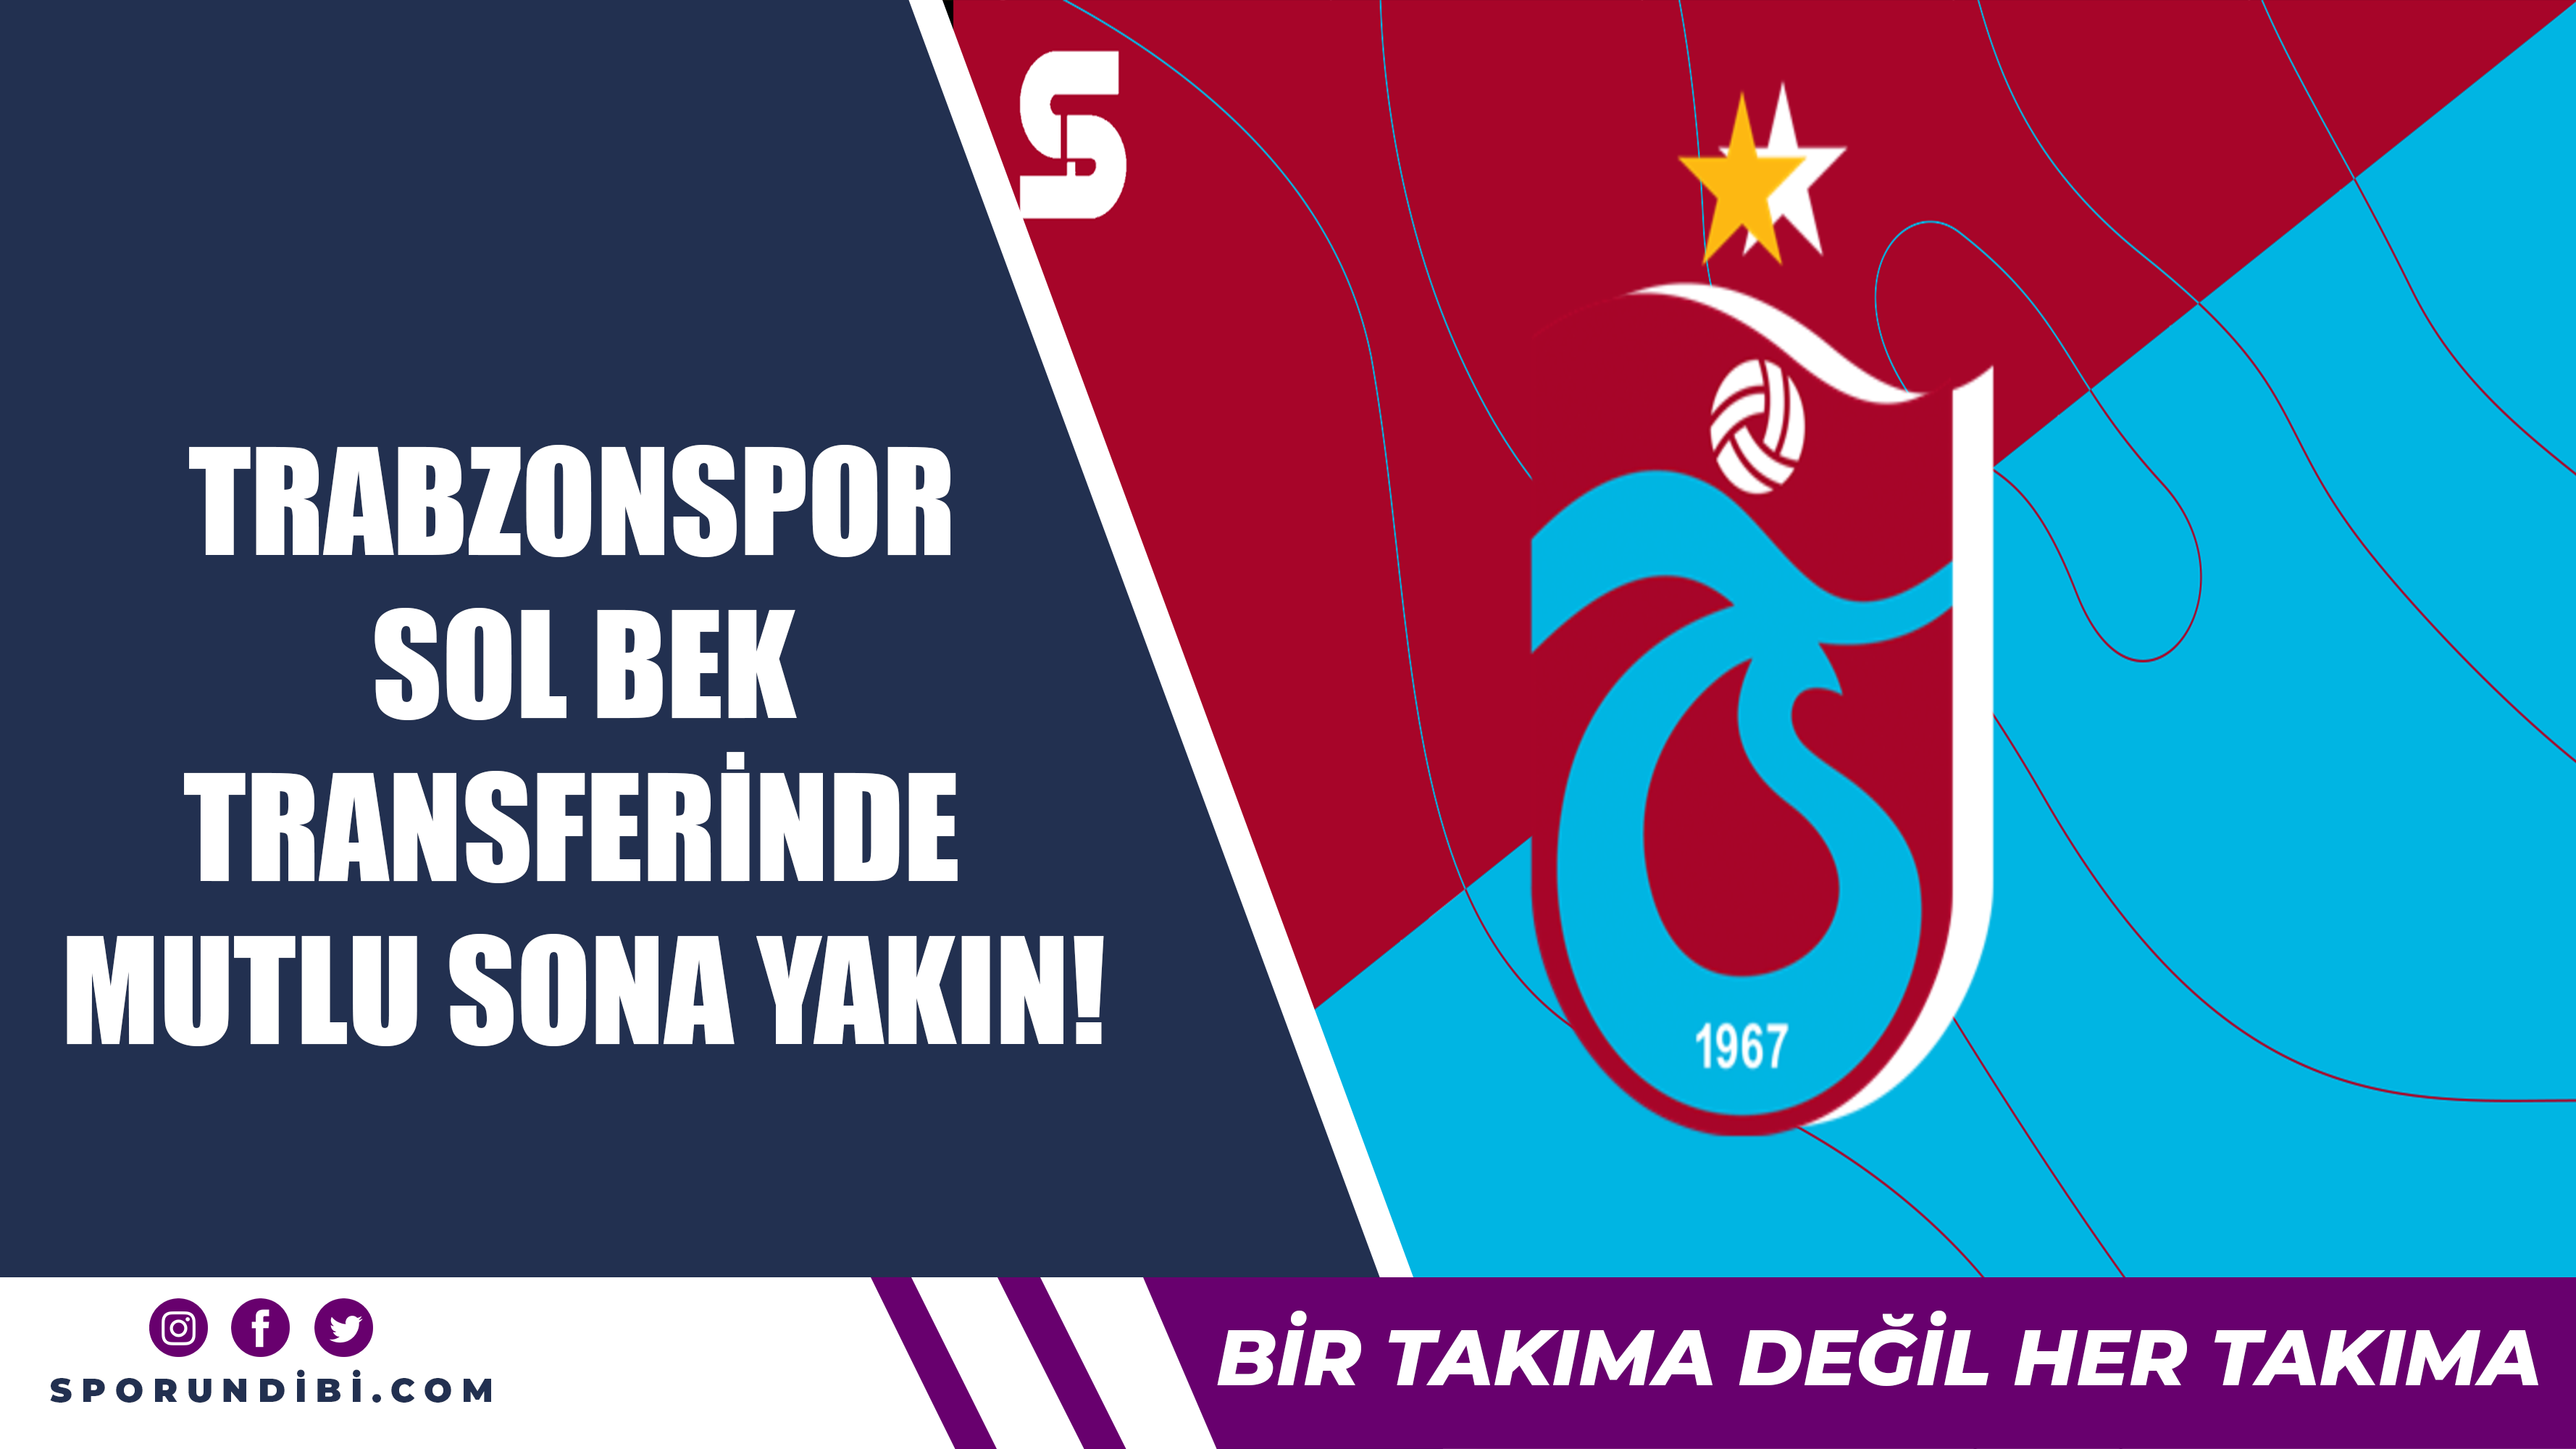 Trabzonspor sol bek transferinde mutlu sona yakın!